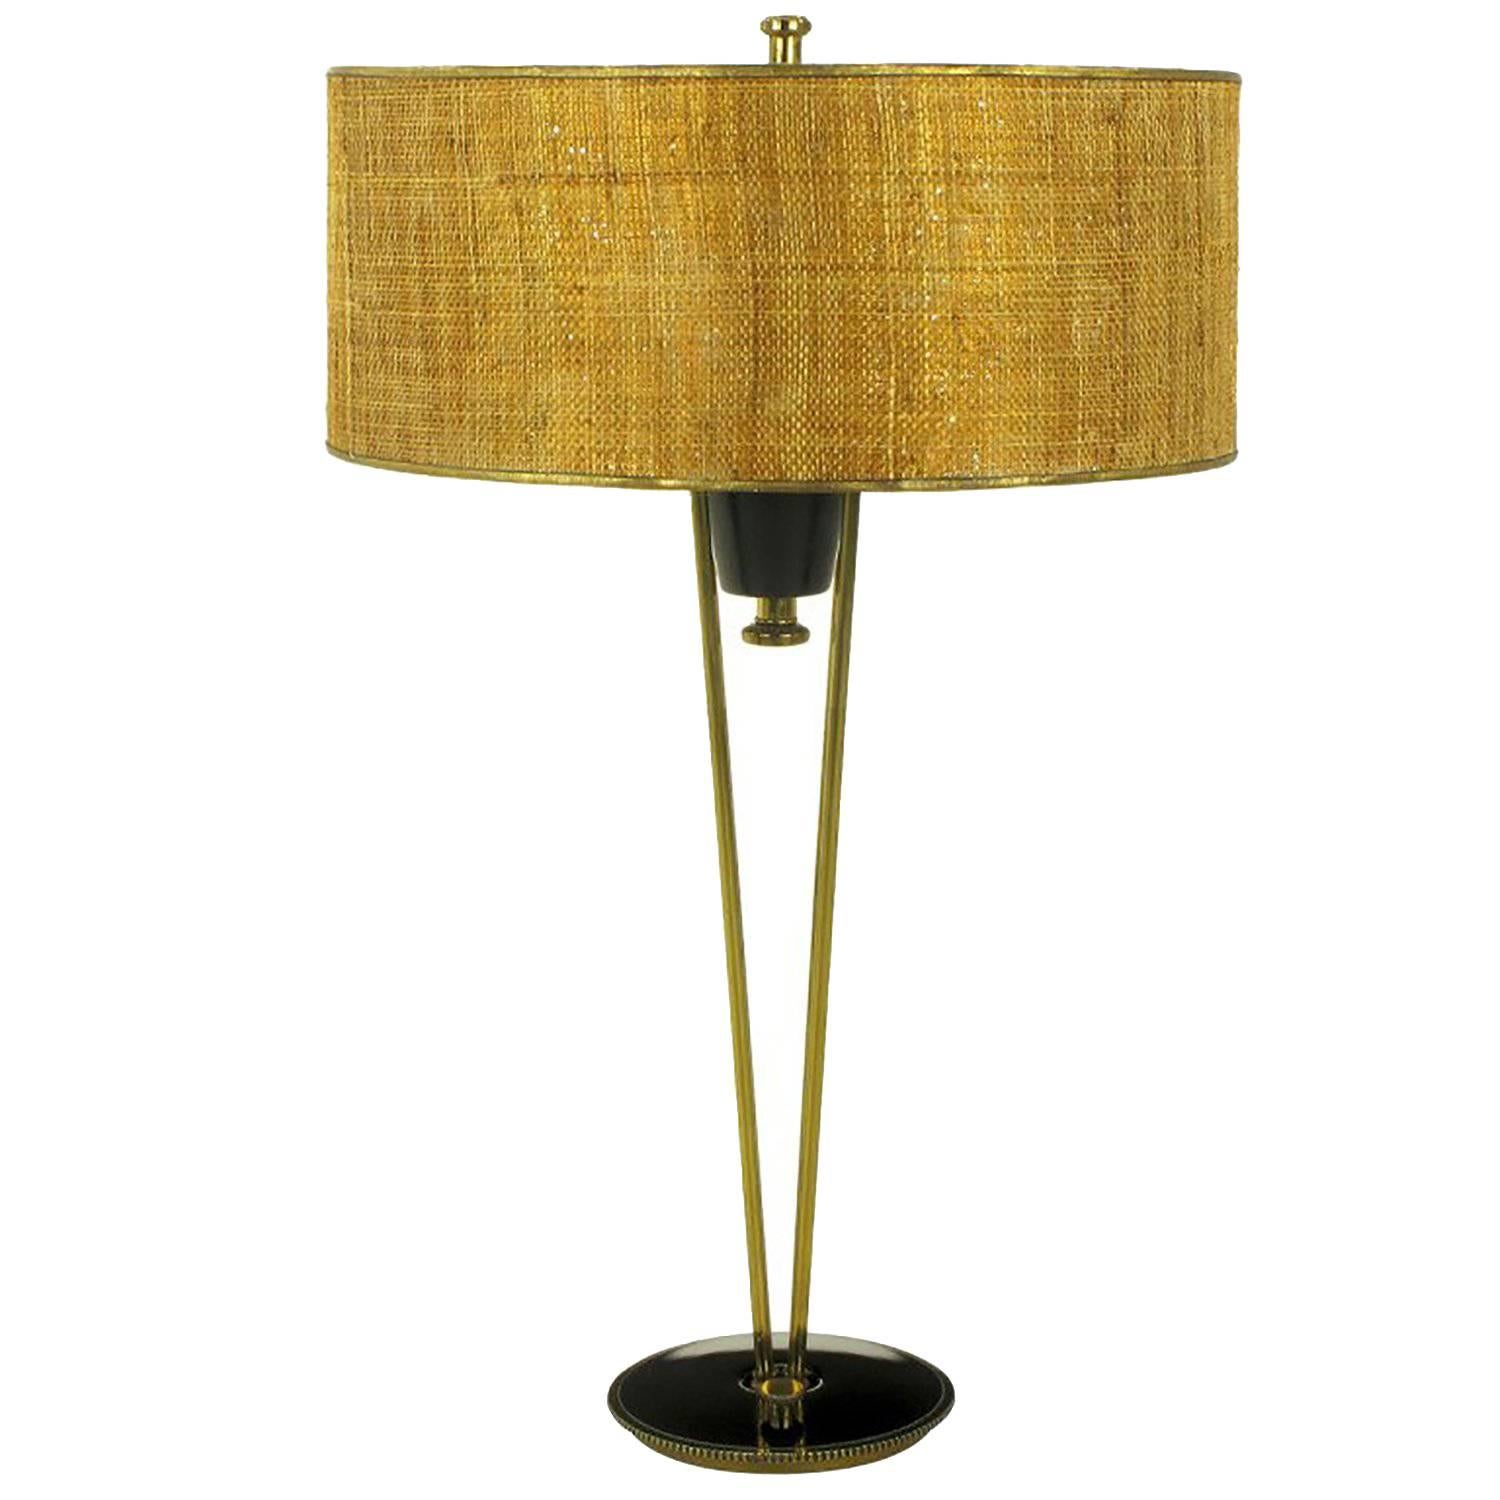 Rare 1950s Stiffel Black Lacquer and Brass Suspension Table Lamp